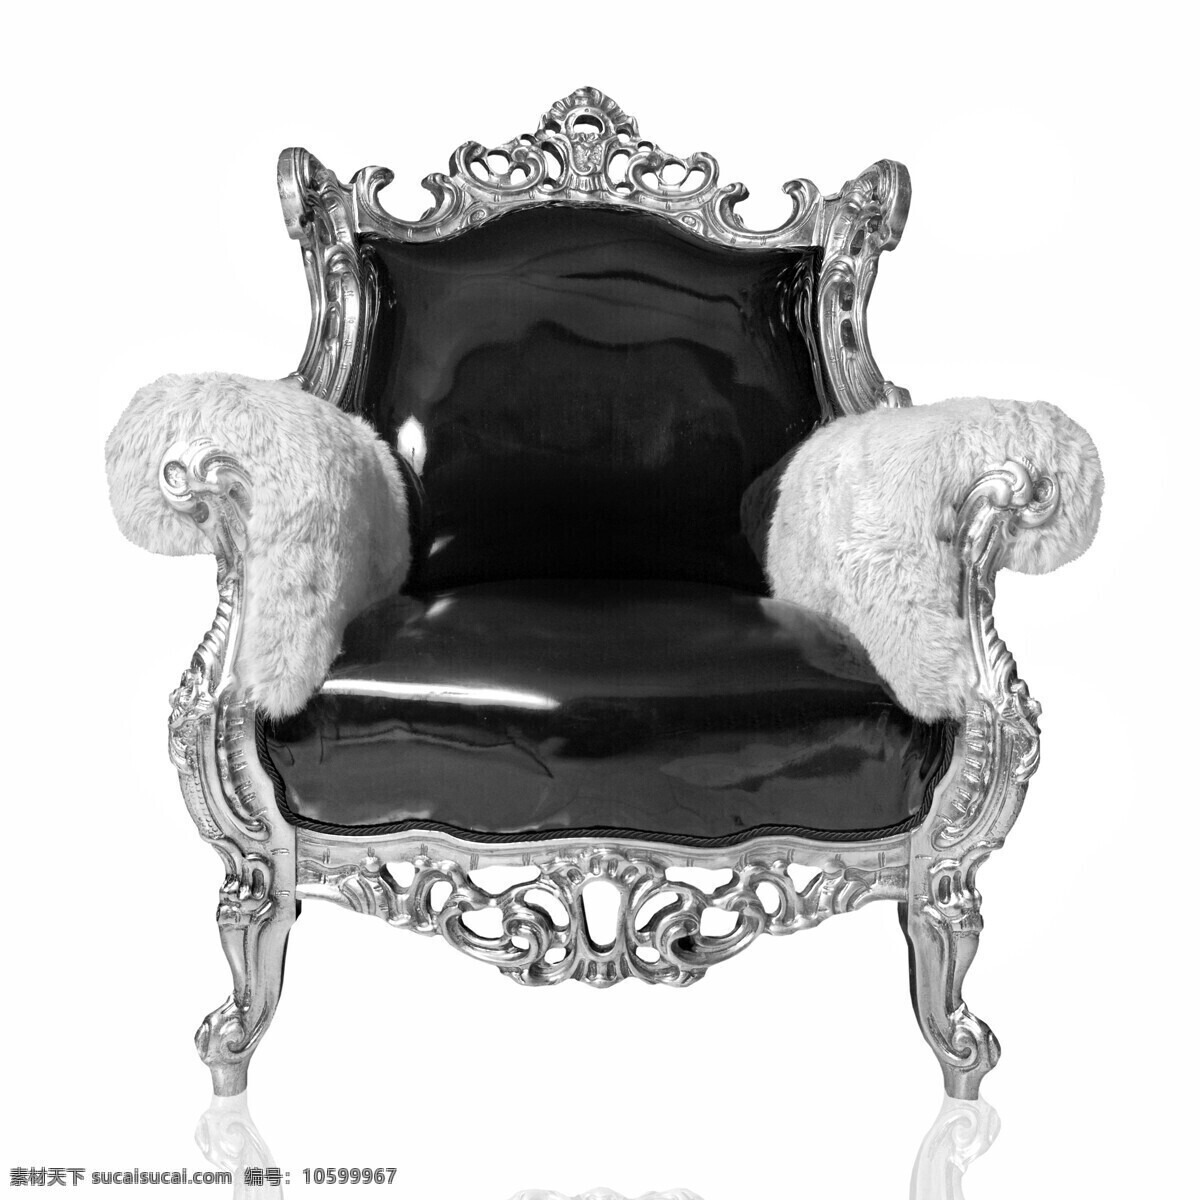 欧式 沙发椅 黑白 照片 高清图片 黑白照片 雕刻花纹 座椅 毛皮扶手 椅子 沙发 浮力 奢华 小巧 家私 家具 家具电器 生活百科